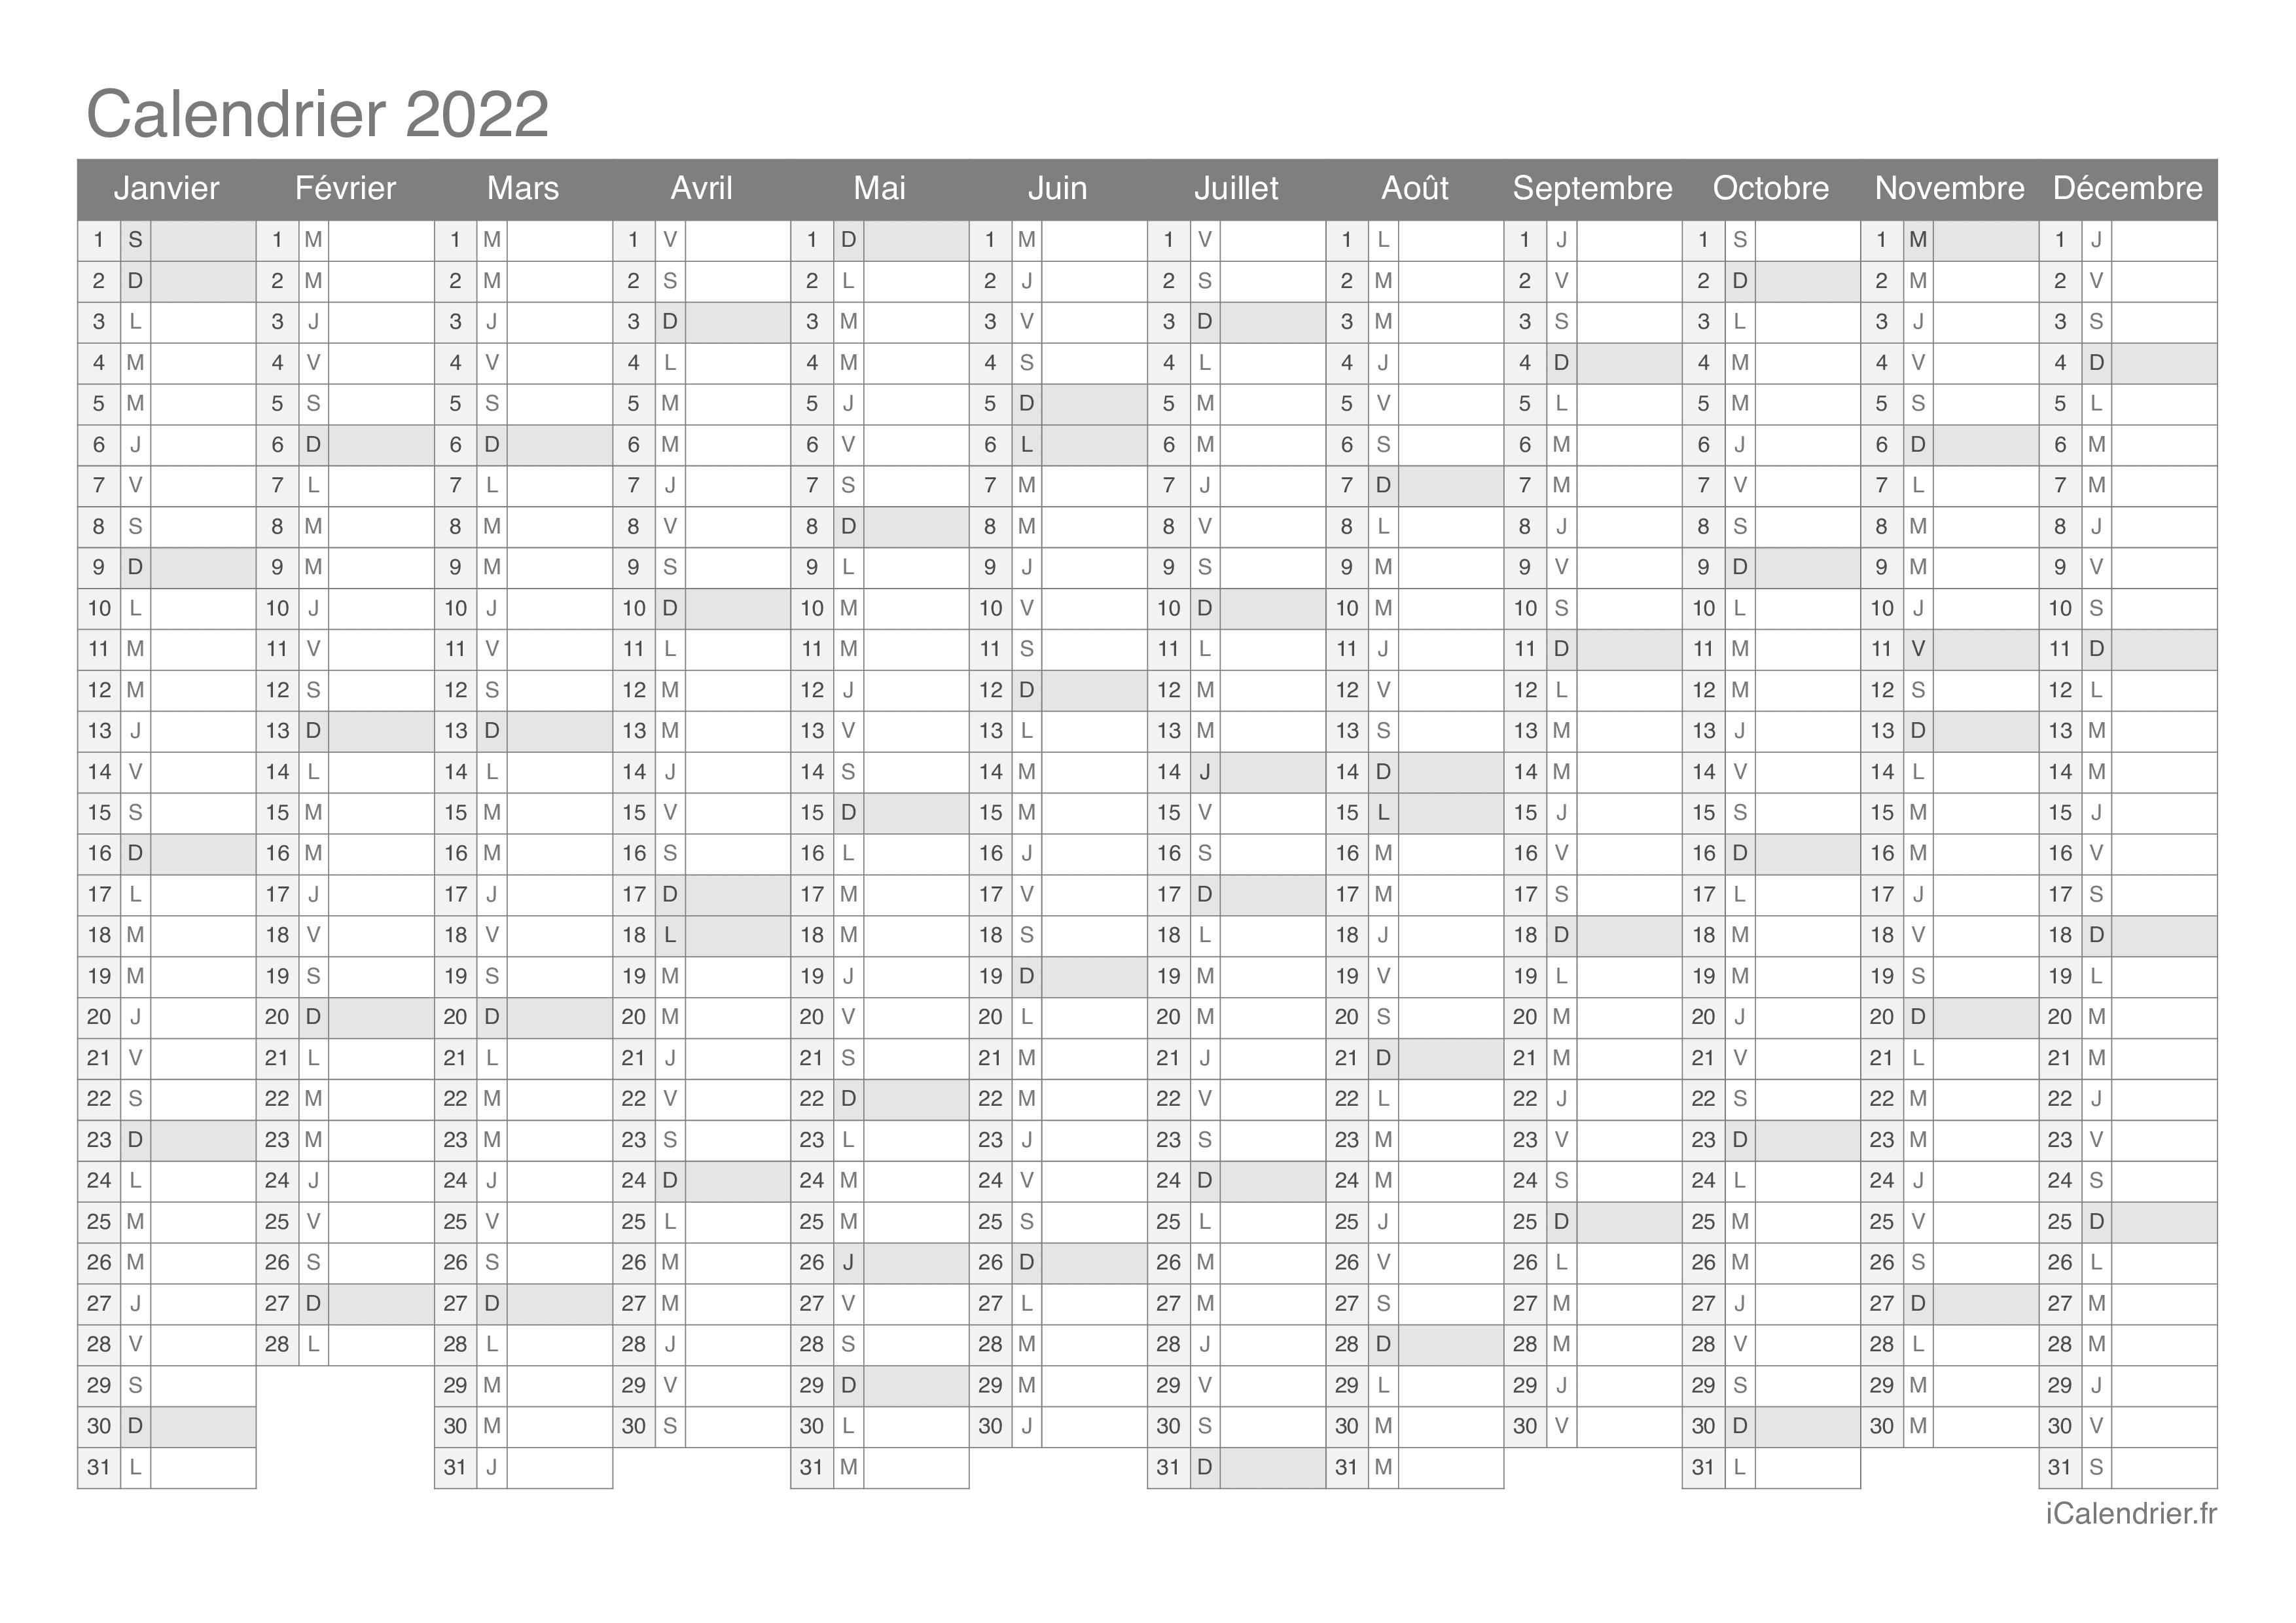 Calendrier 2019 Et 2022 à Imprimer Vierge Calendrier 2022 à imprimer PDF et Excel   iCalendrier